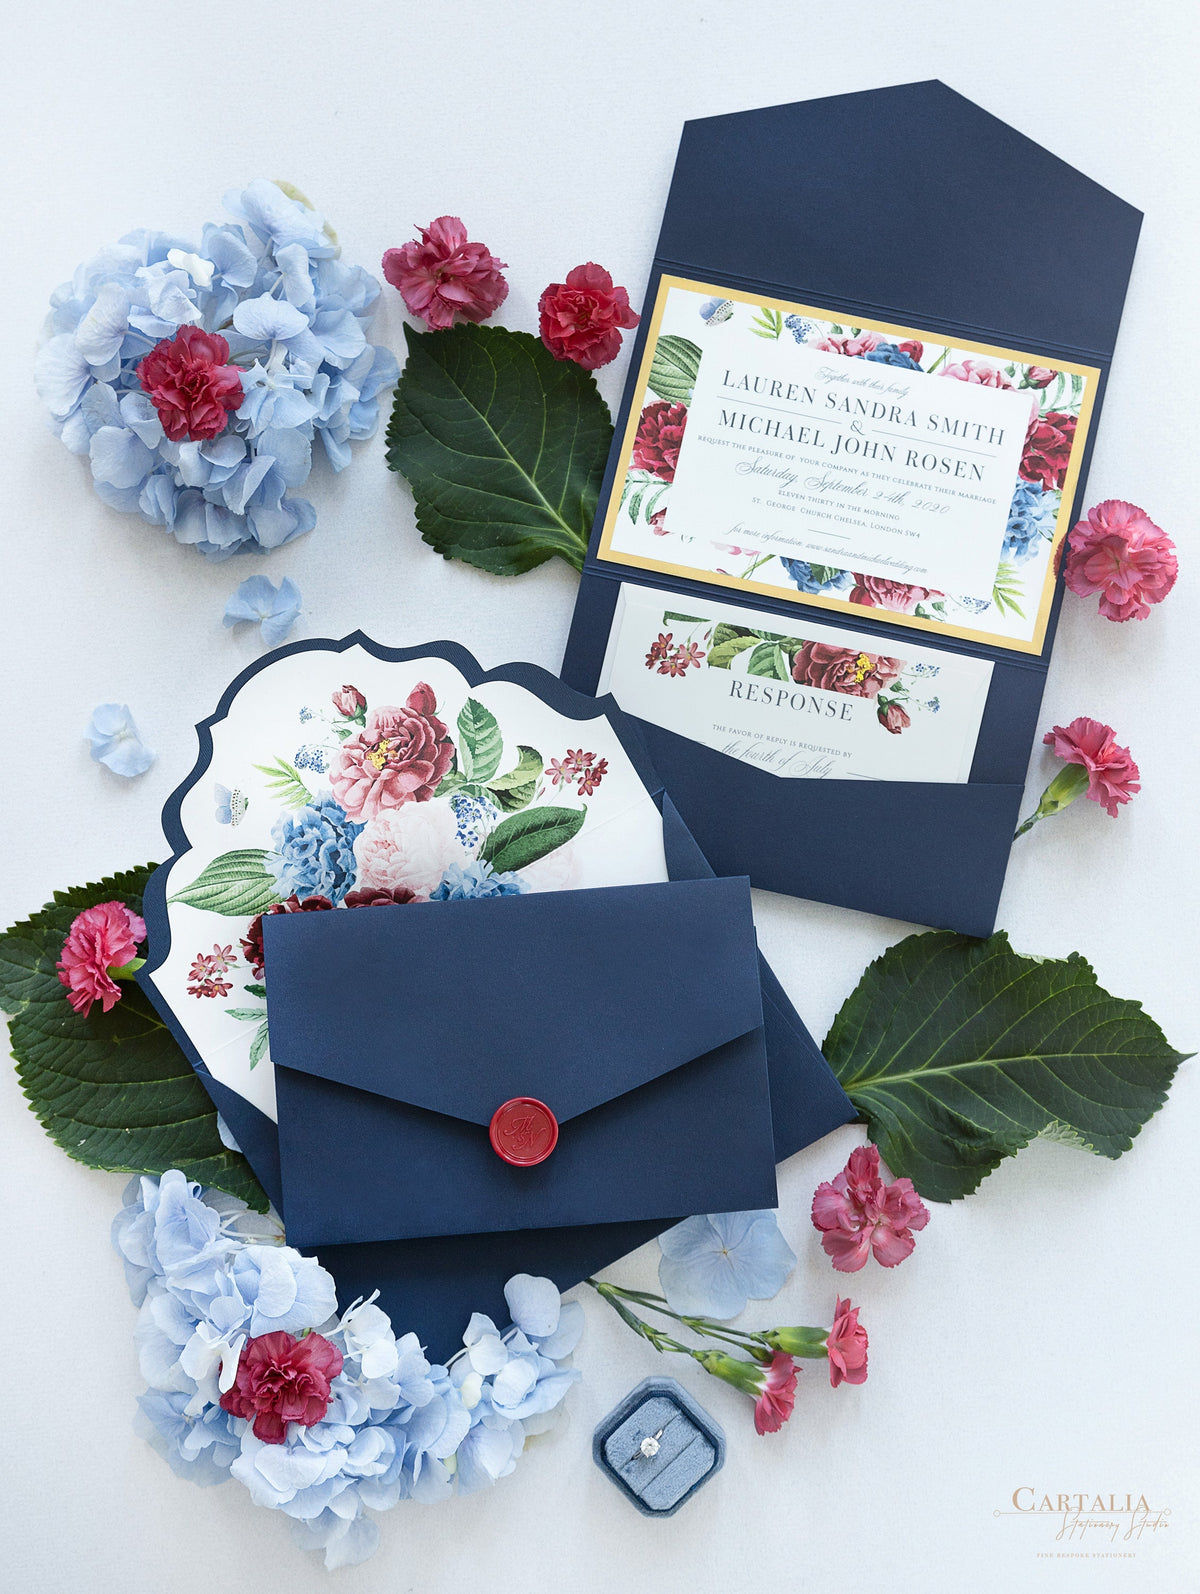 Invitation classique en rafale de fleurs avec salle de poche enveloppe plie en bleu marine